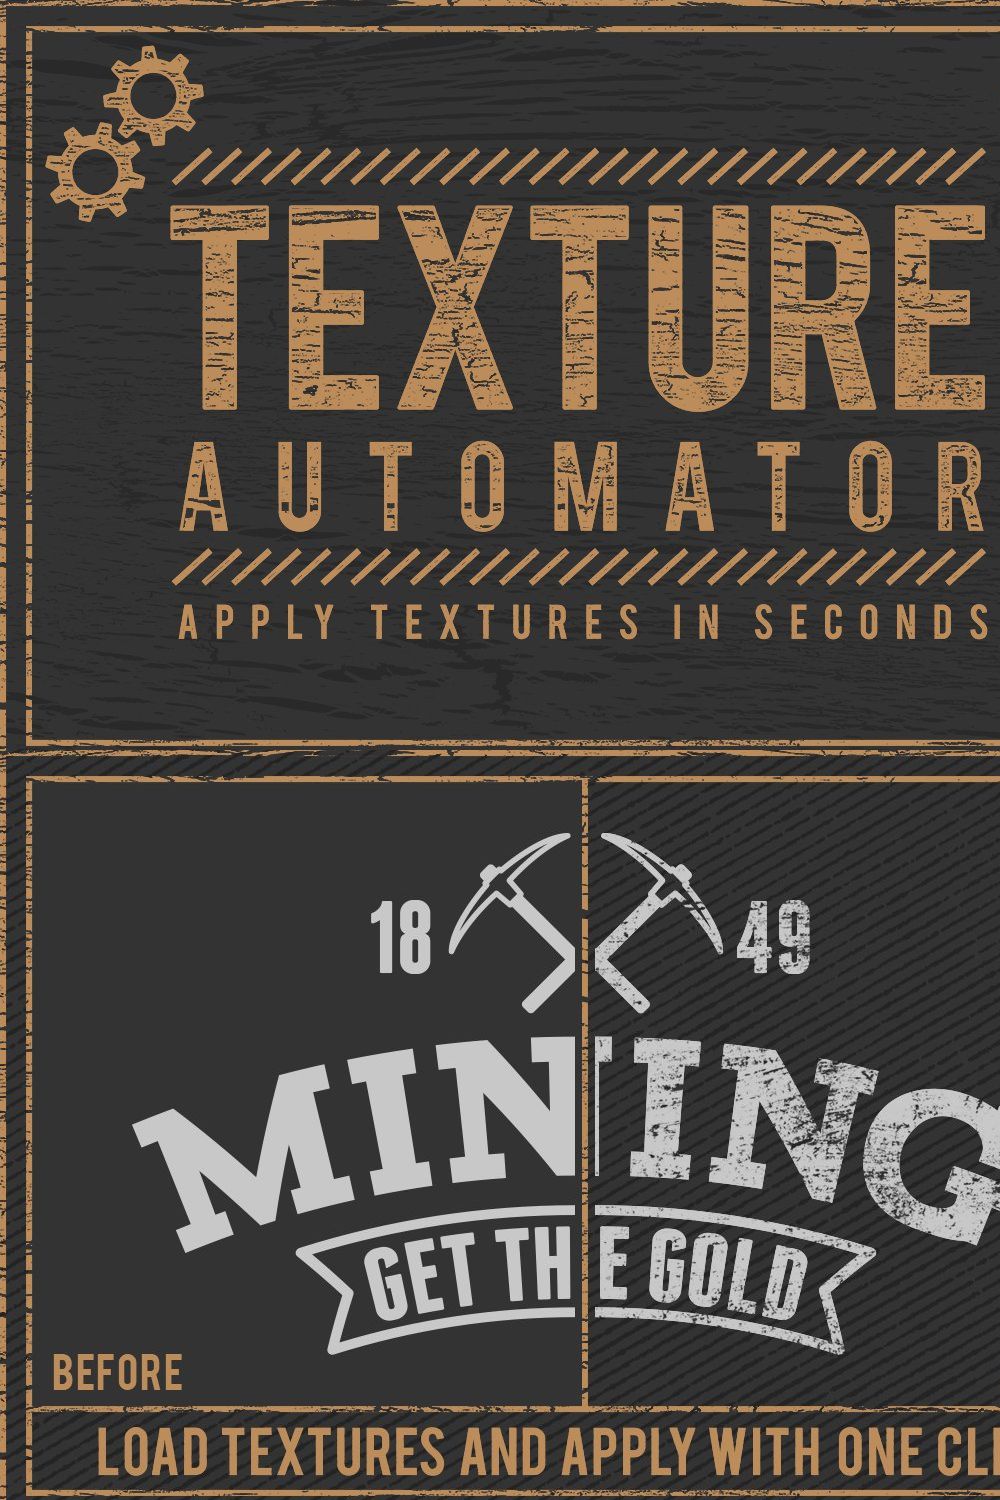 Texture Automator + 45 Texture Bonus pinterest preview image.